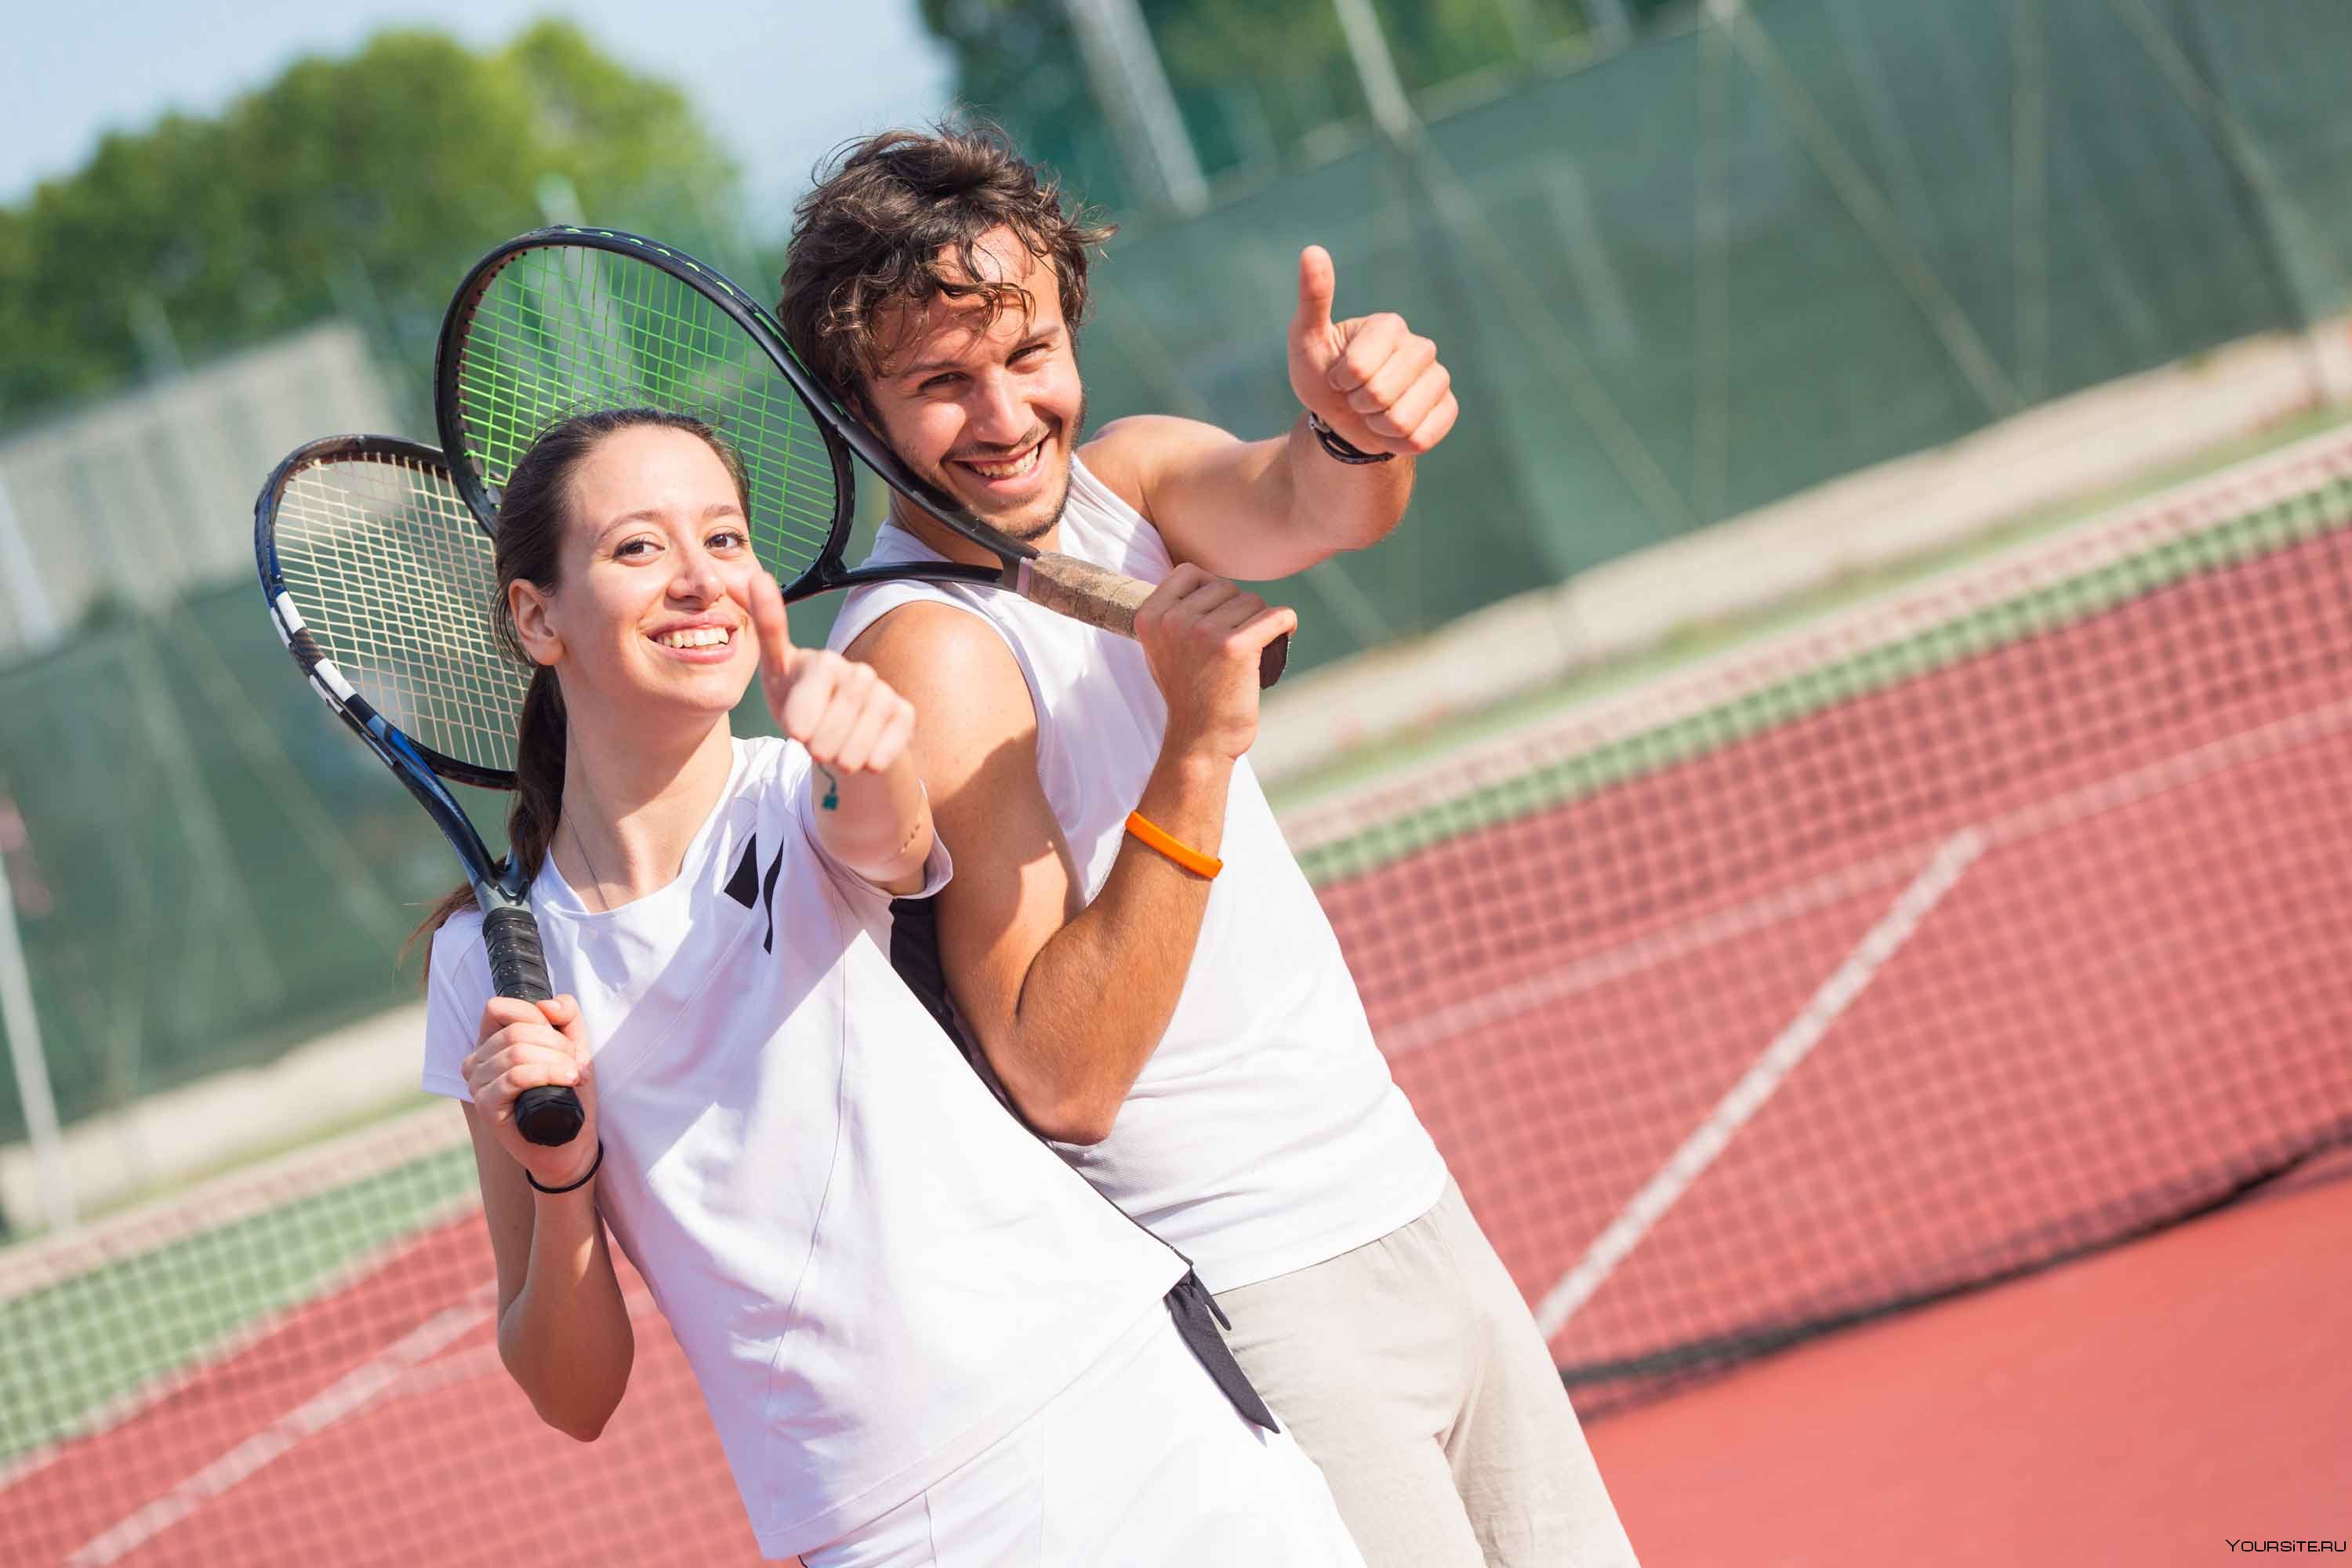 Вместо игры в настольный теннис парочка занимается сексом на свежем воздухе